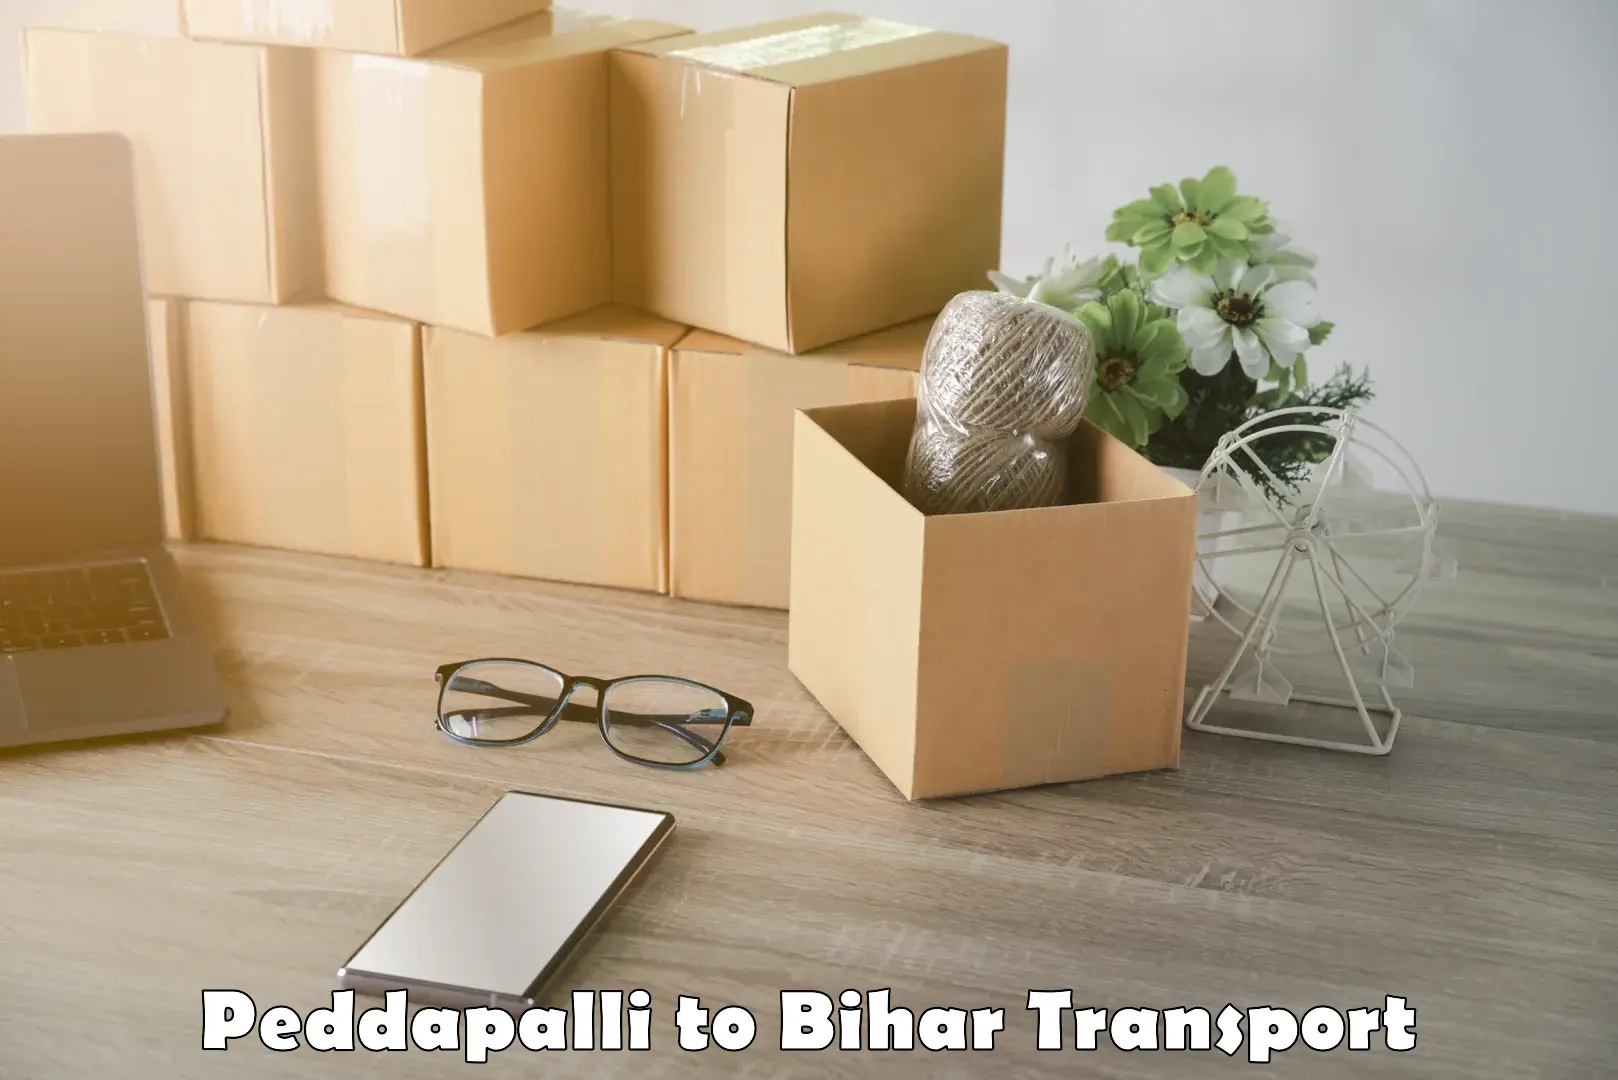 Furniture transport service in Peddapalli to Bihar